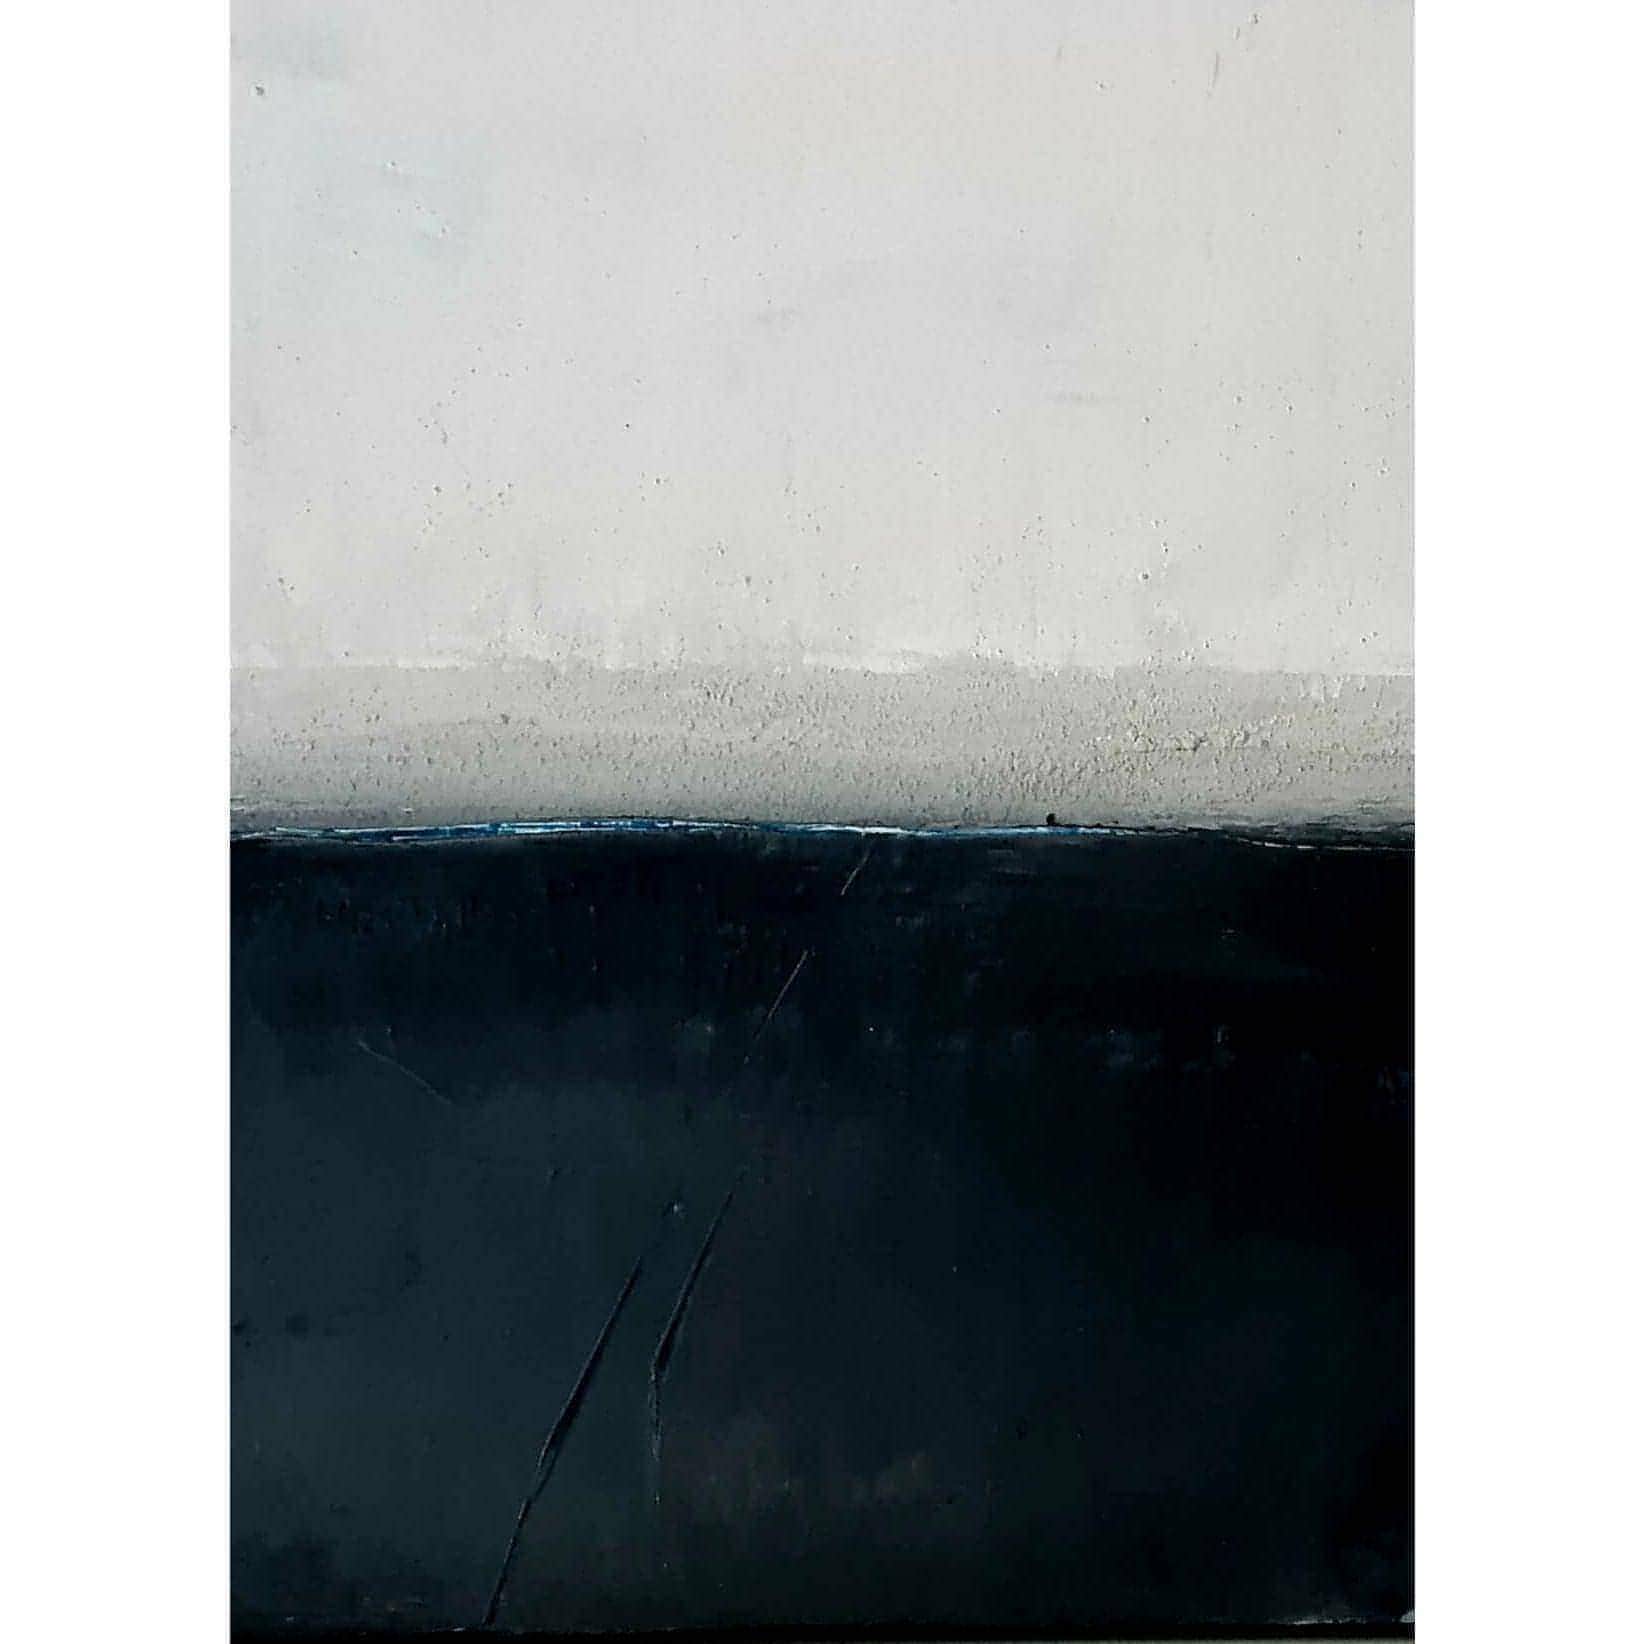 Ruhige Landschaft in Schwarz-Weiß: Ein minimalistisches Gemälde mit morgendlichem Nebel Abstrakte Bilder & moderne Auftragsmalerei, abstrakte große bilder online kaufen, Auftrags Malere